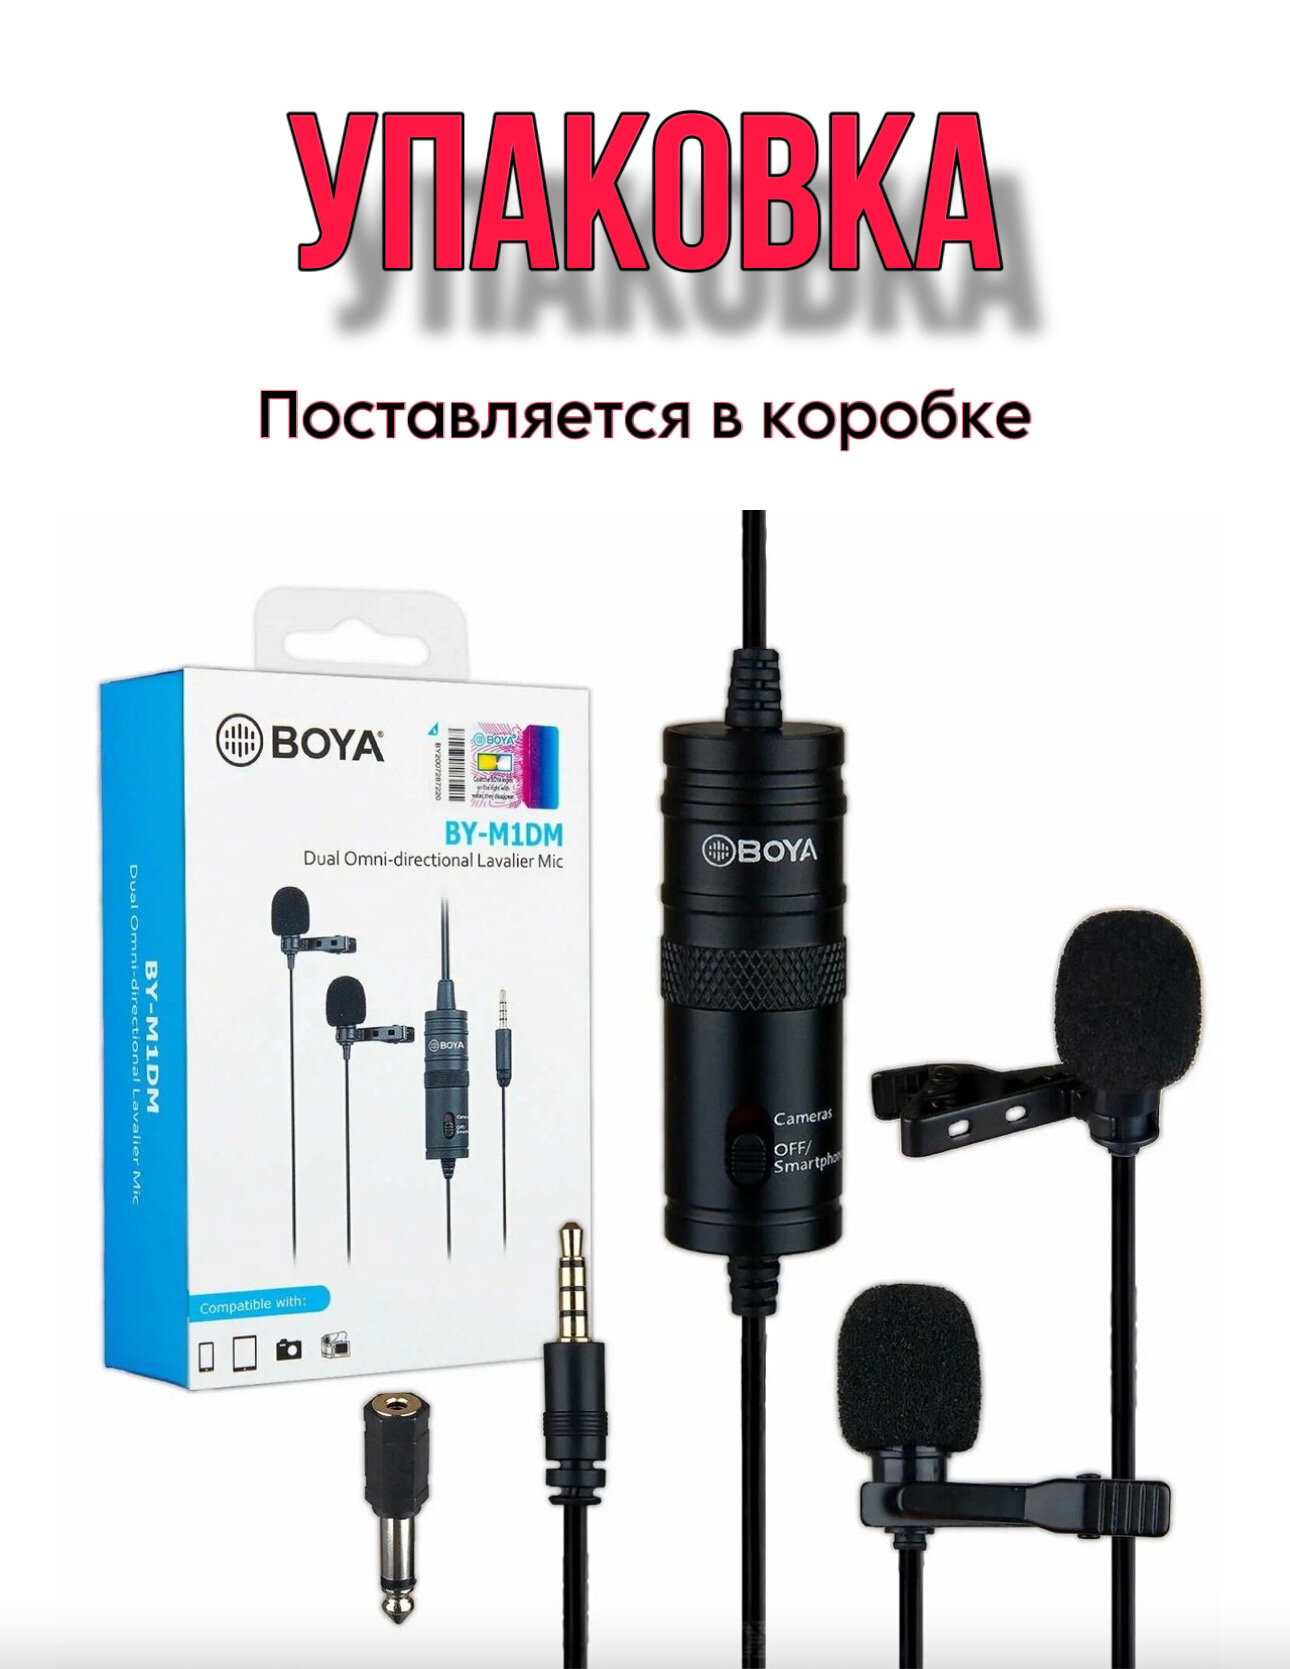 Микрофонный комплект BOYA двойной BY-M1DM, разъем: mini jack 3.5 mm, черный